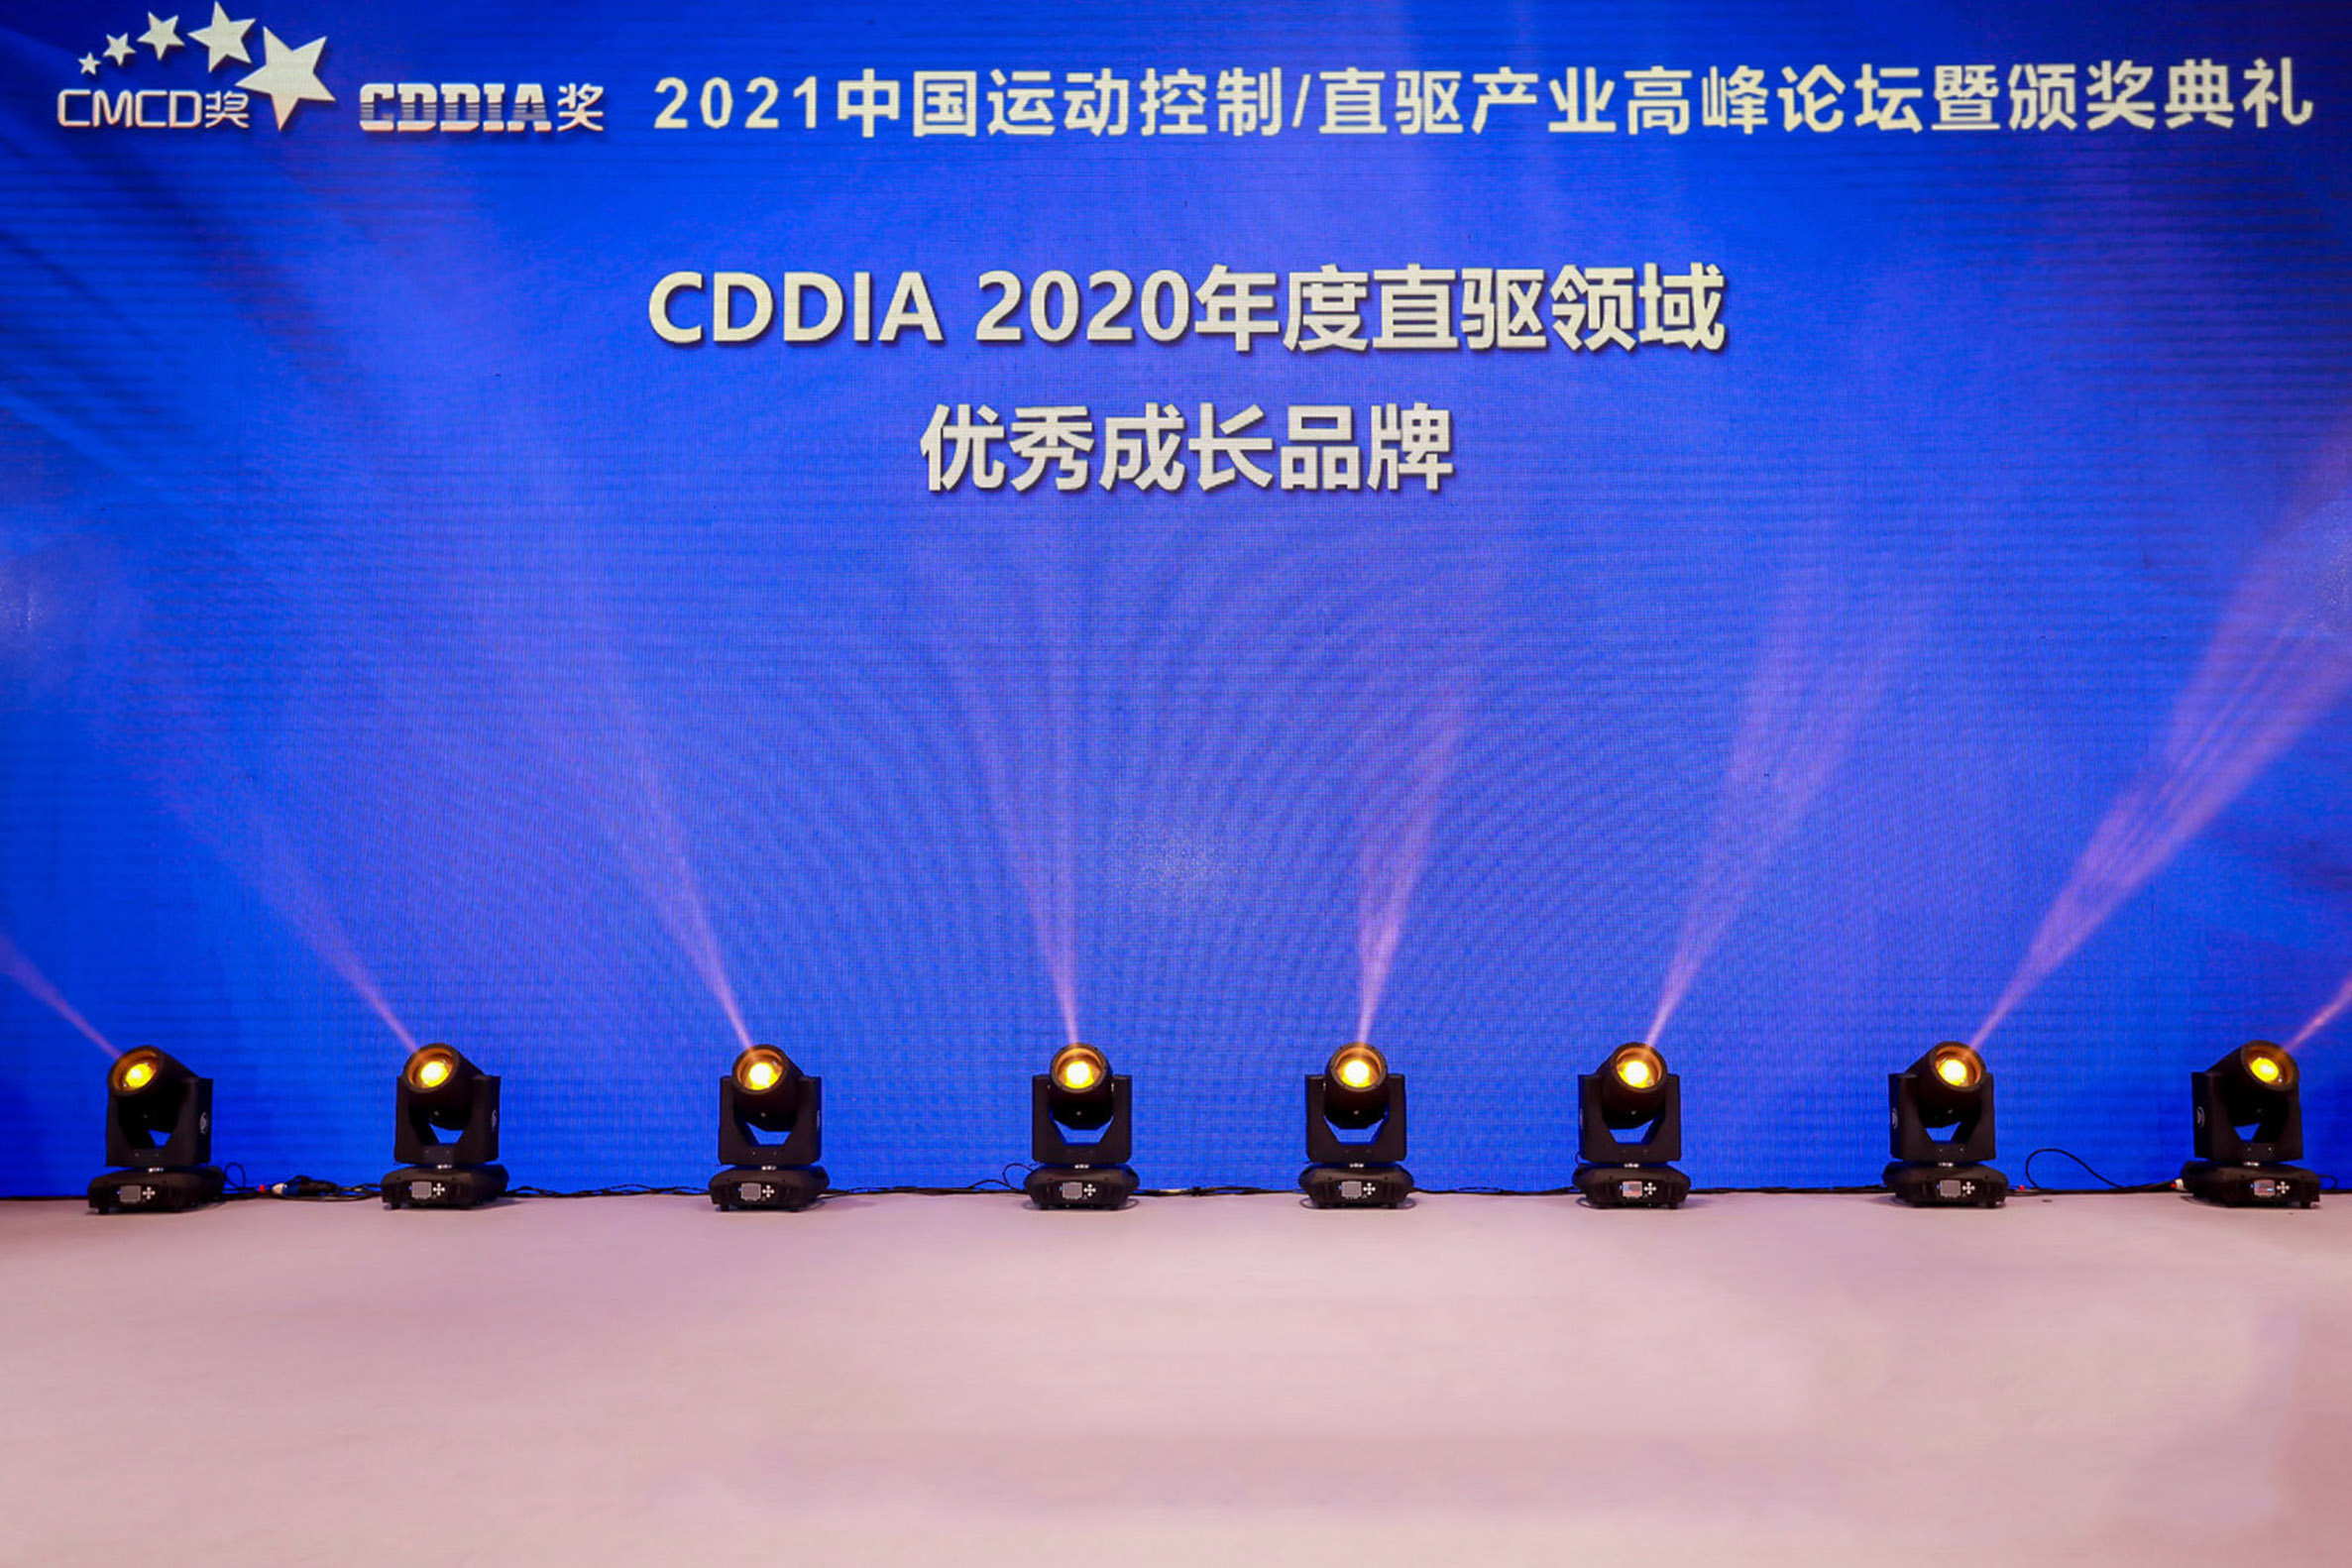 灵猴机器人荣获2020年度直驱领域优秀成长品牌奖